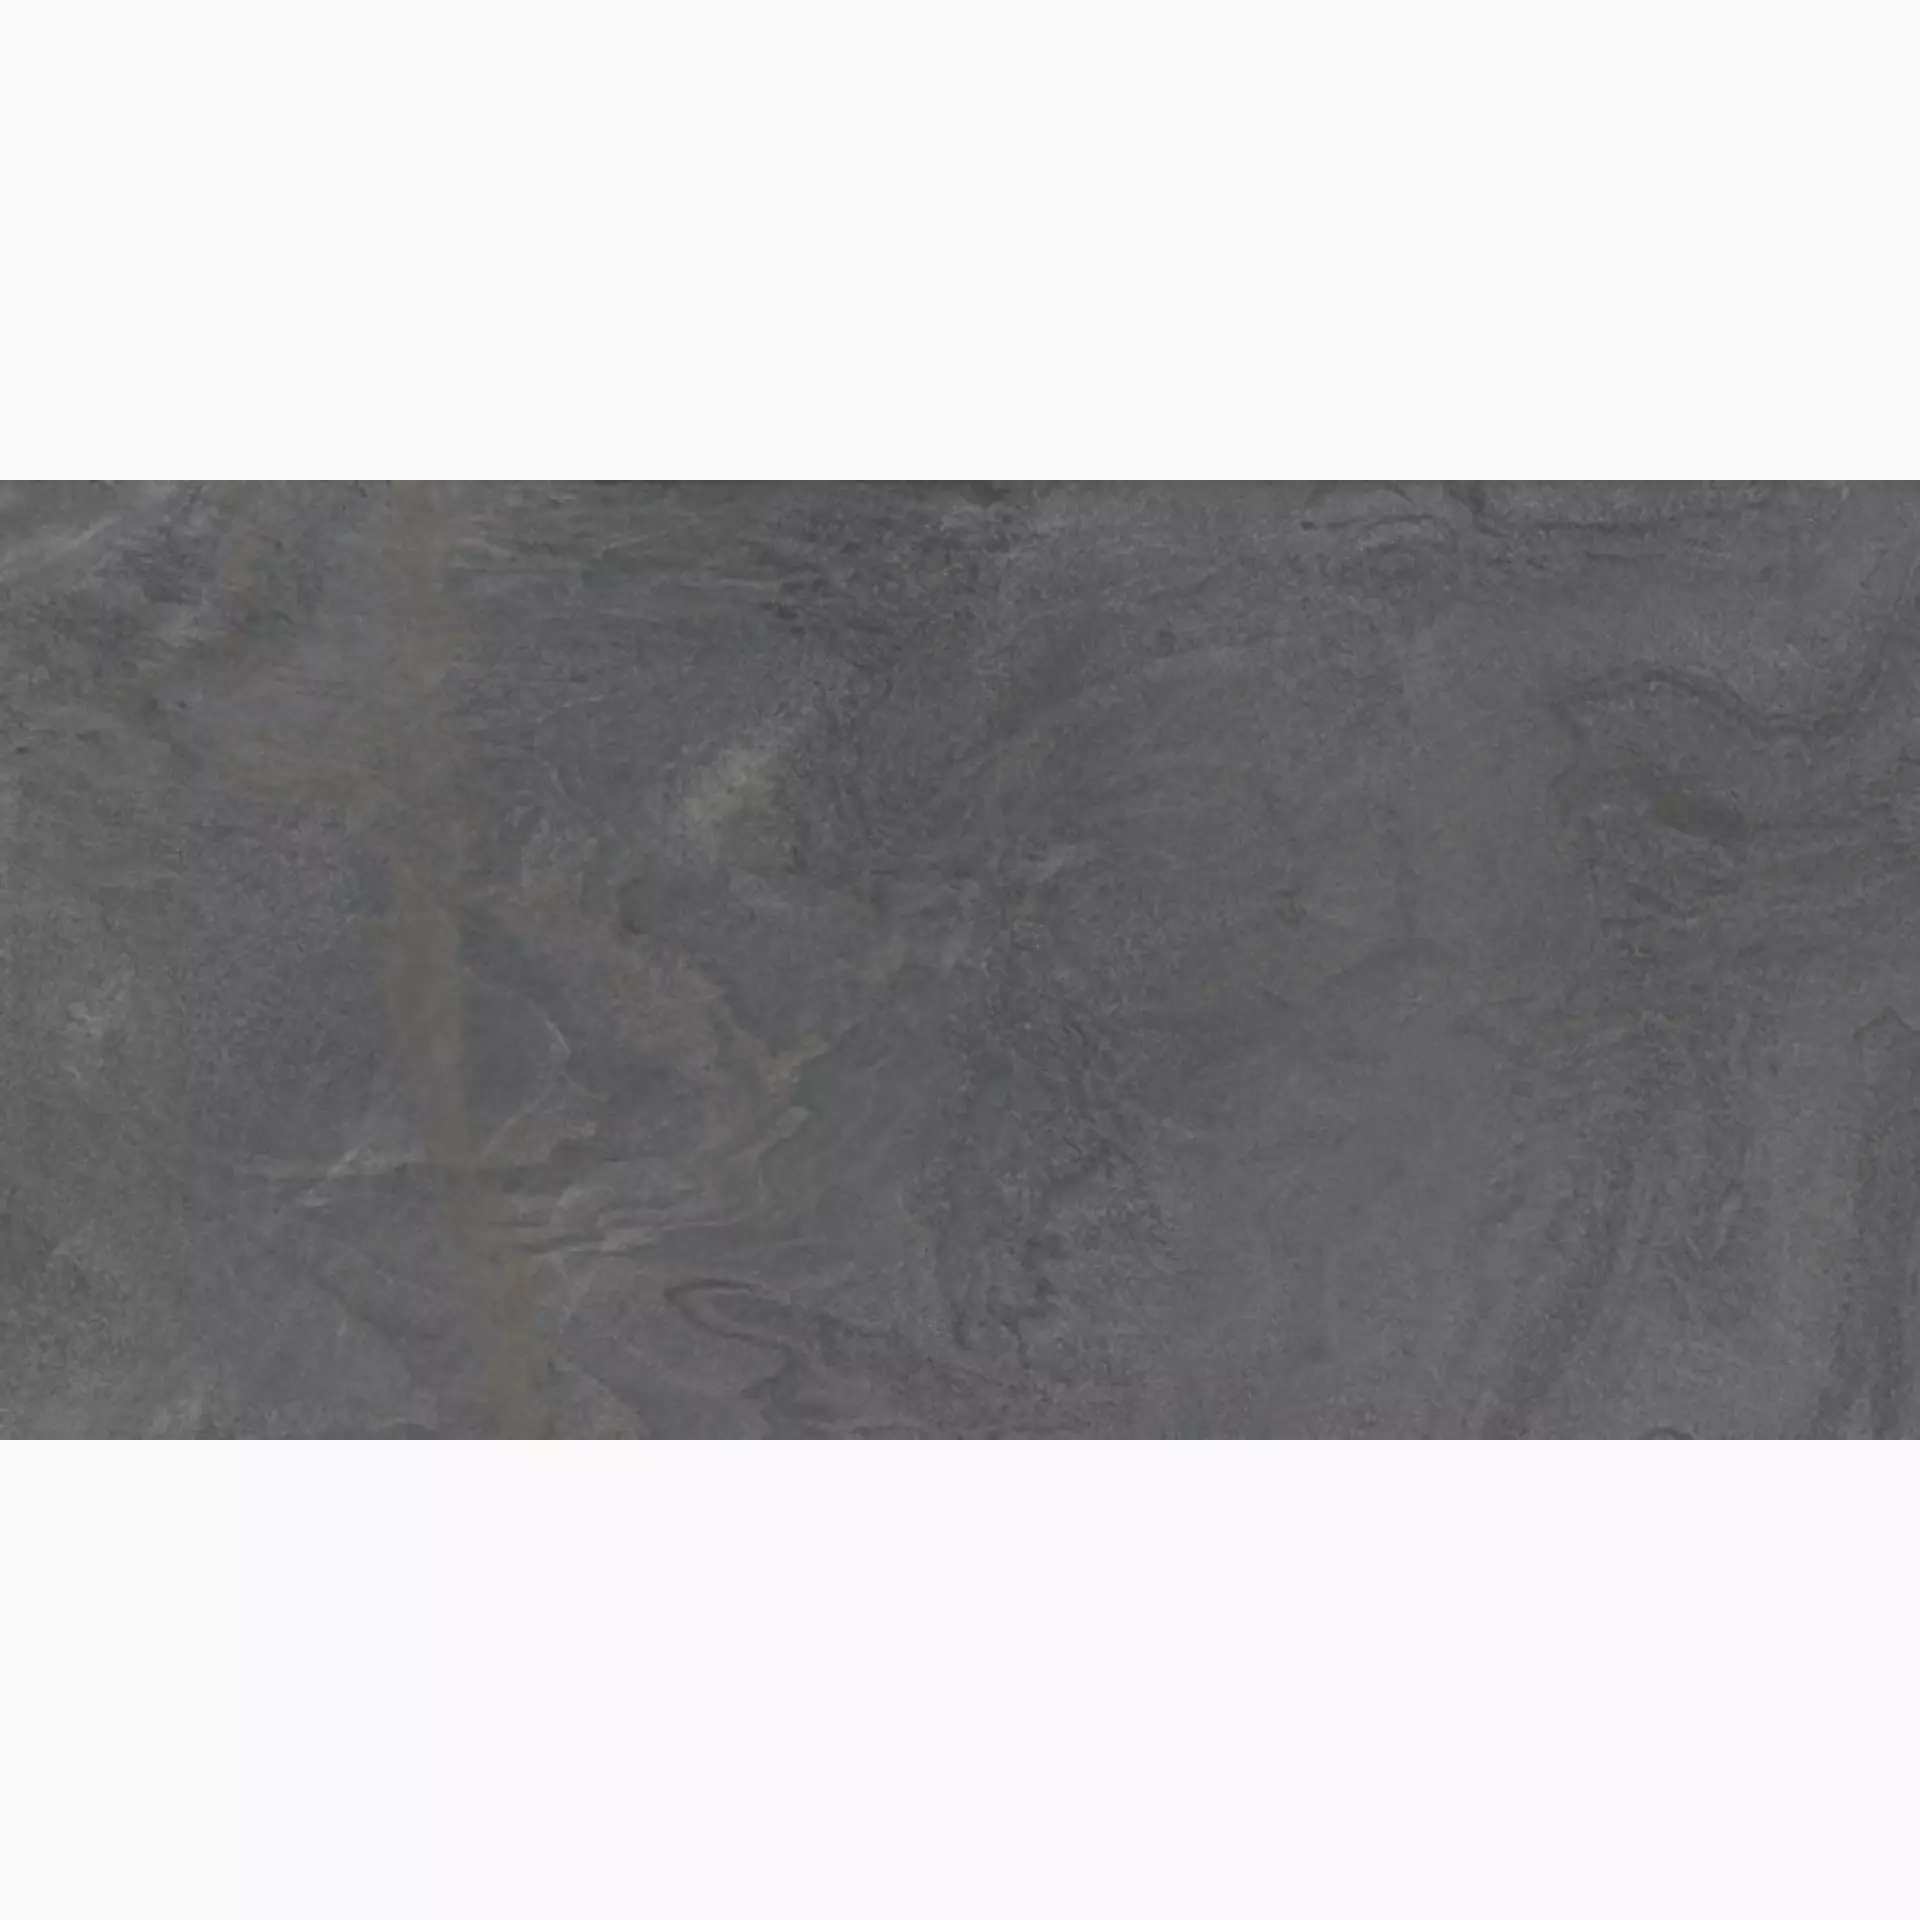 Diesel Diesel Liquid Stone Black Naturale – Matt 863748 30x60cm rektifiziert 9mm